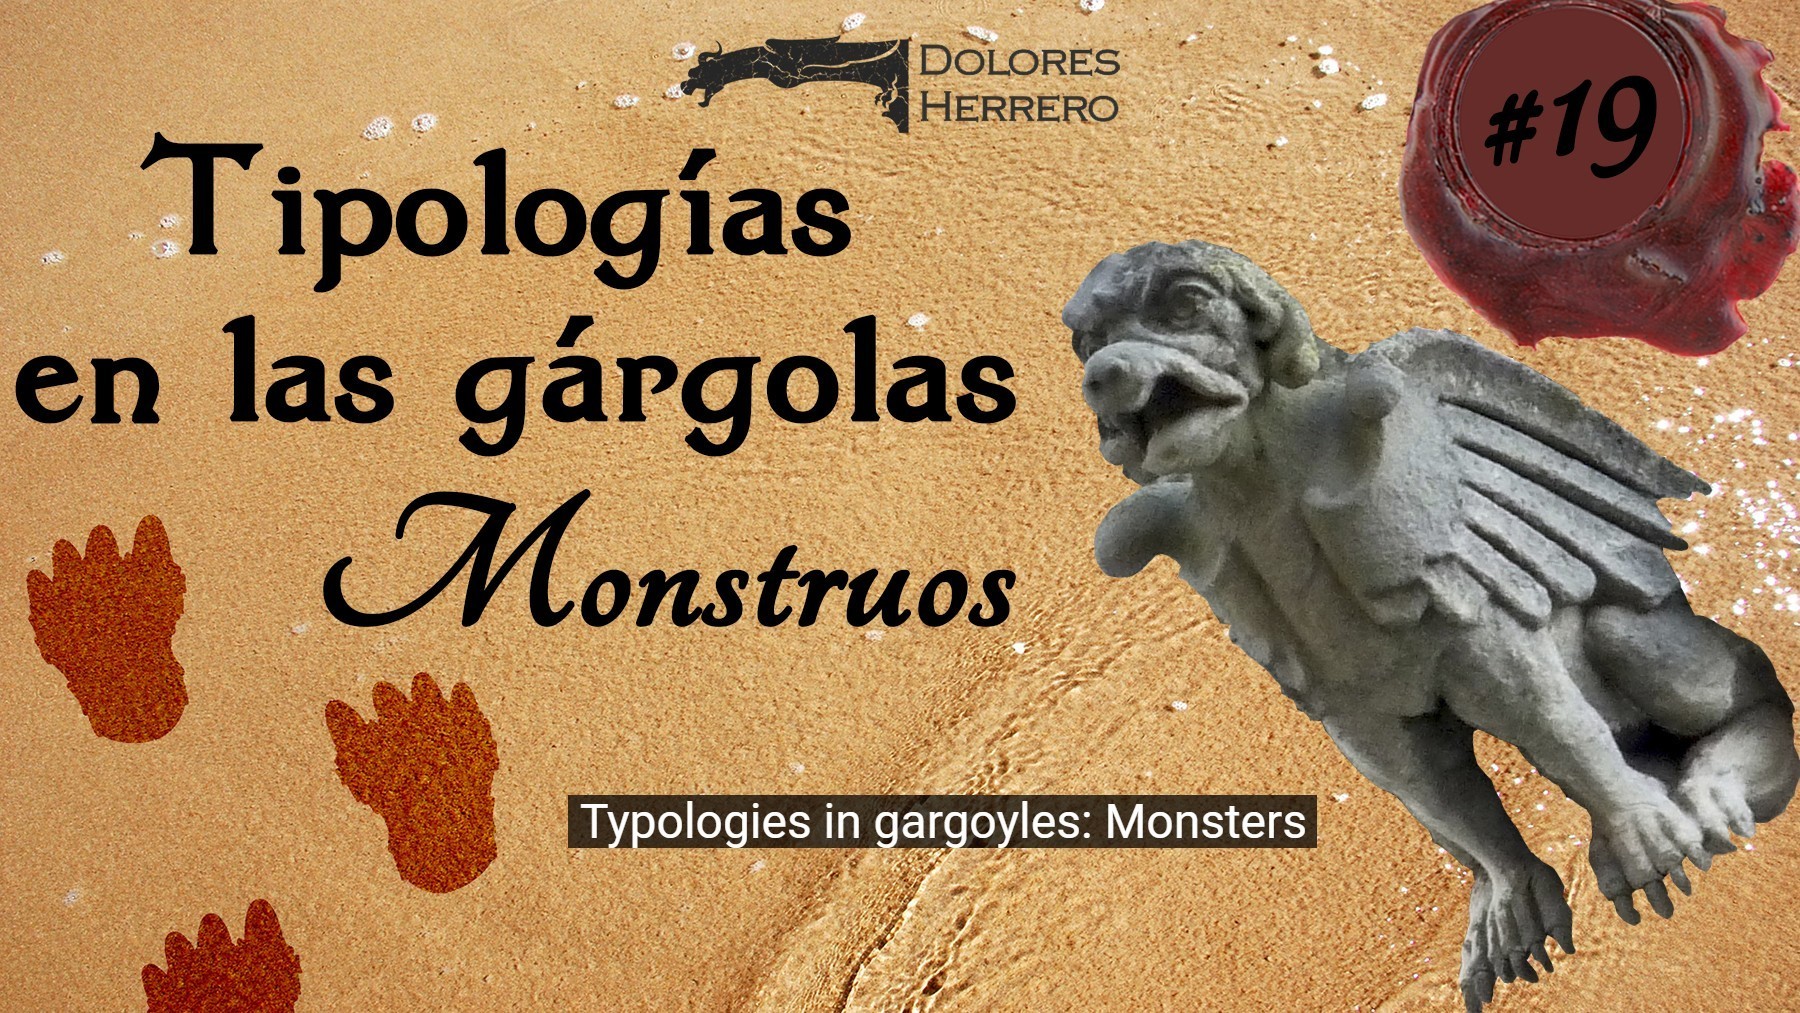 #19 Tipologías: Monstruos